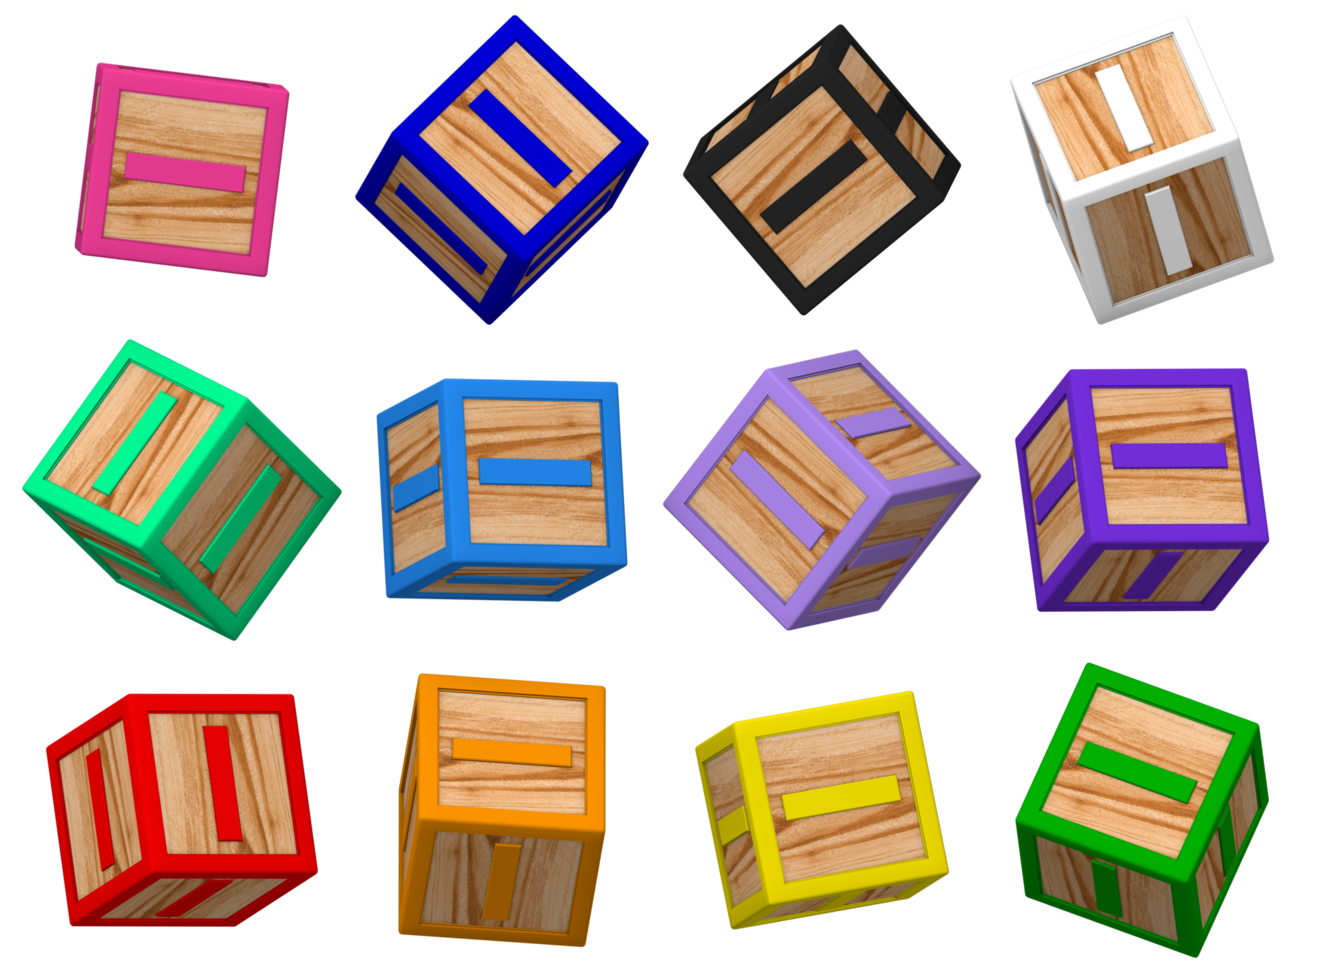 je lettre 3d coloré jouet blocs dans différent tournant position, isolé bois cube des lettres, 3d le rendu png